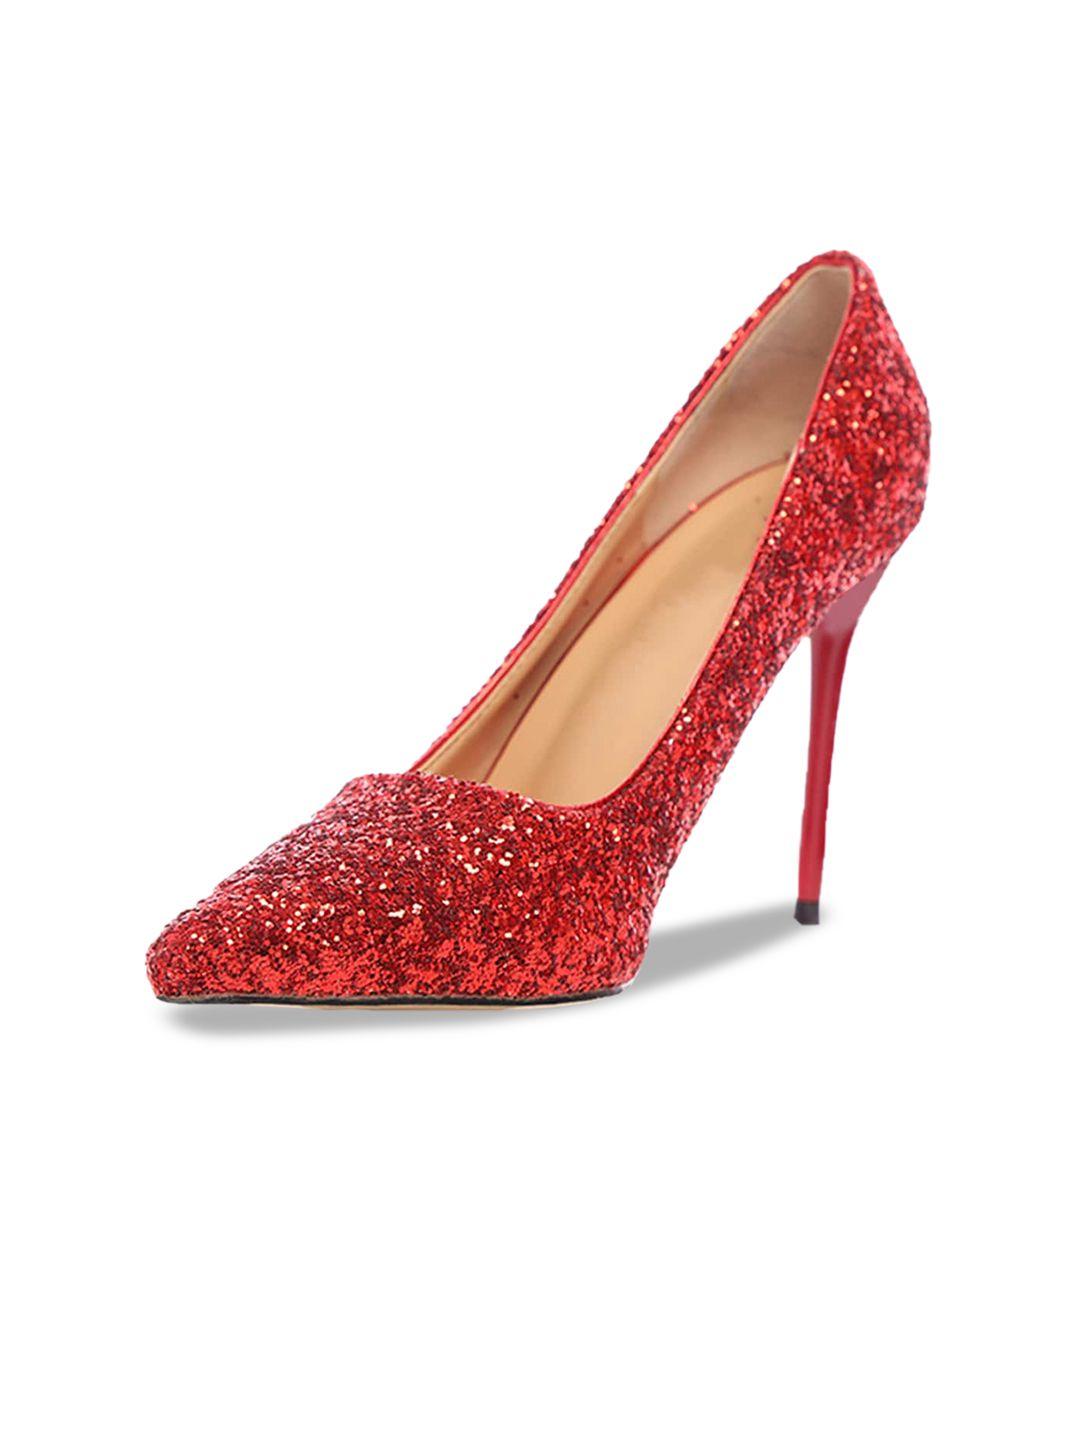 odette embellished pointed toe party heels